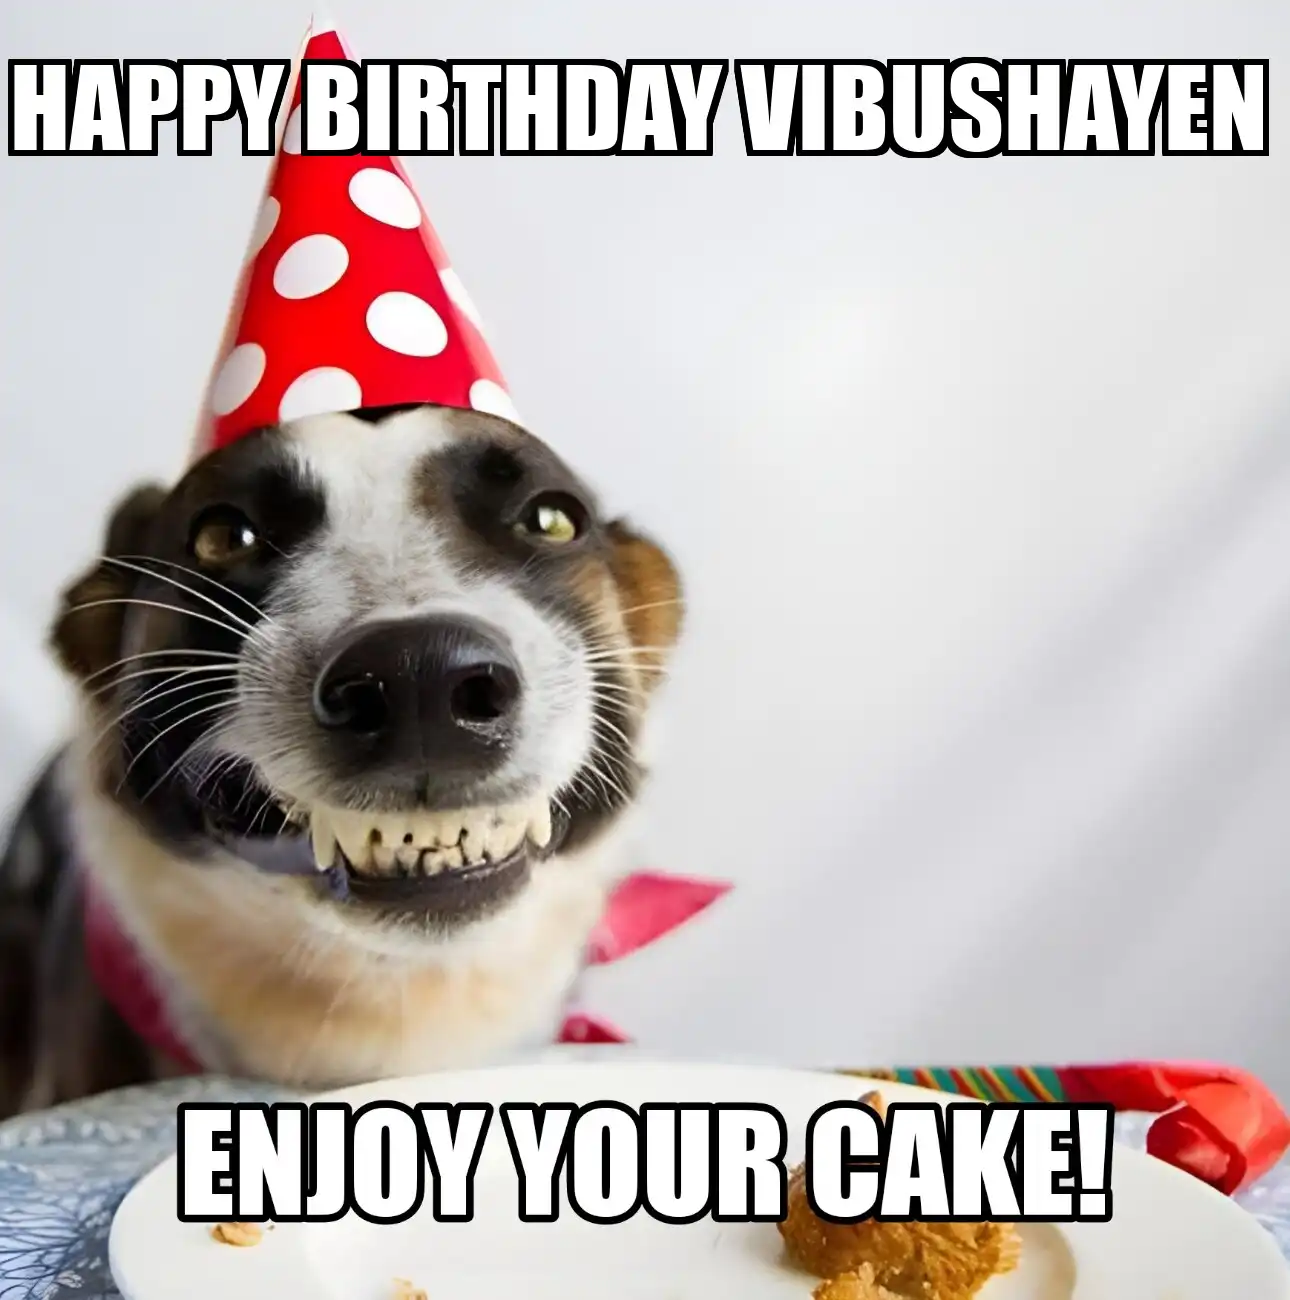 Happy Birthday Vibushayen Enjoy Your Cake Dog Meme